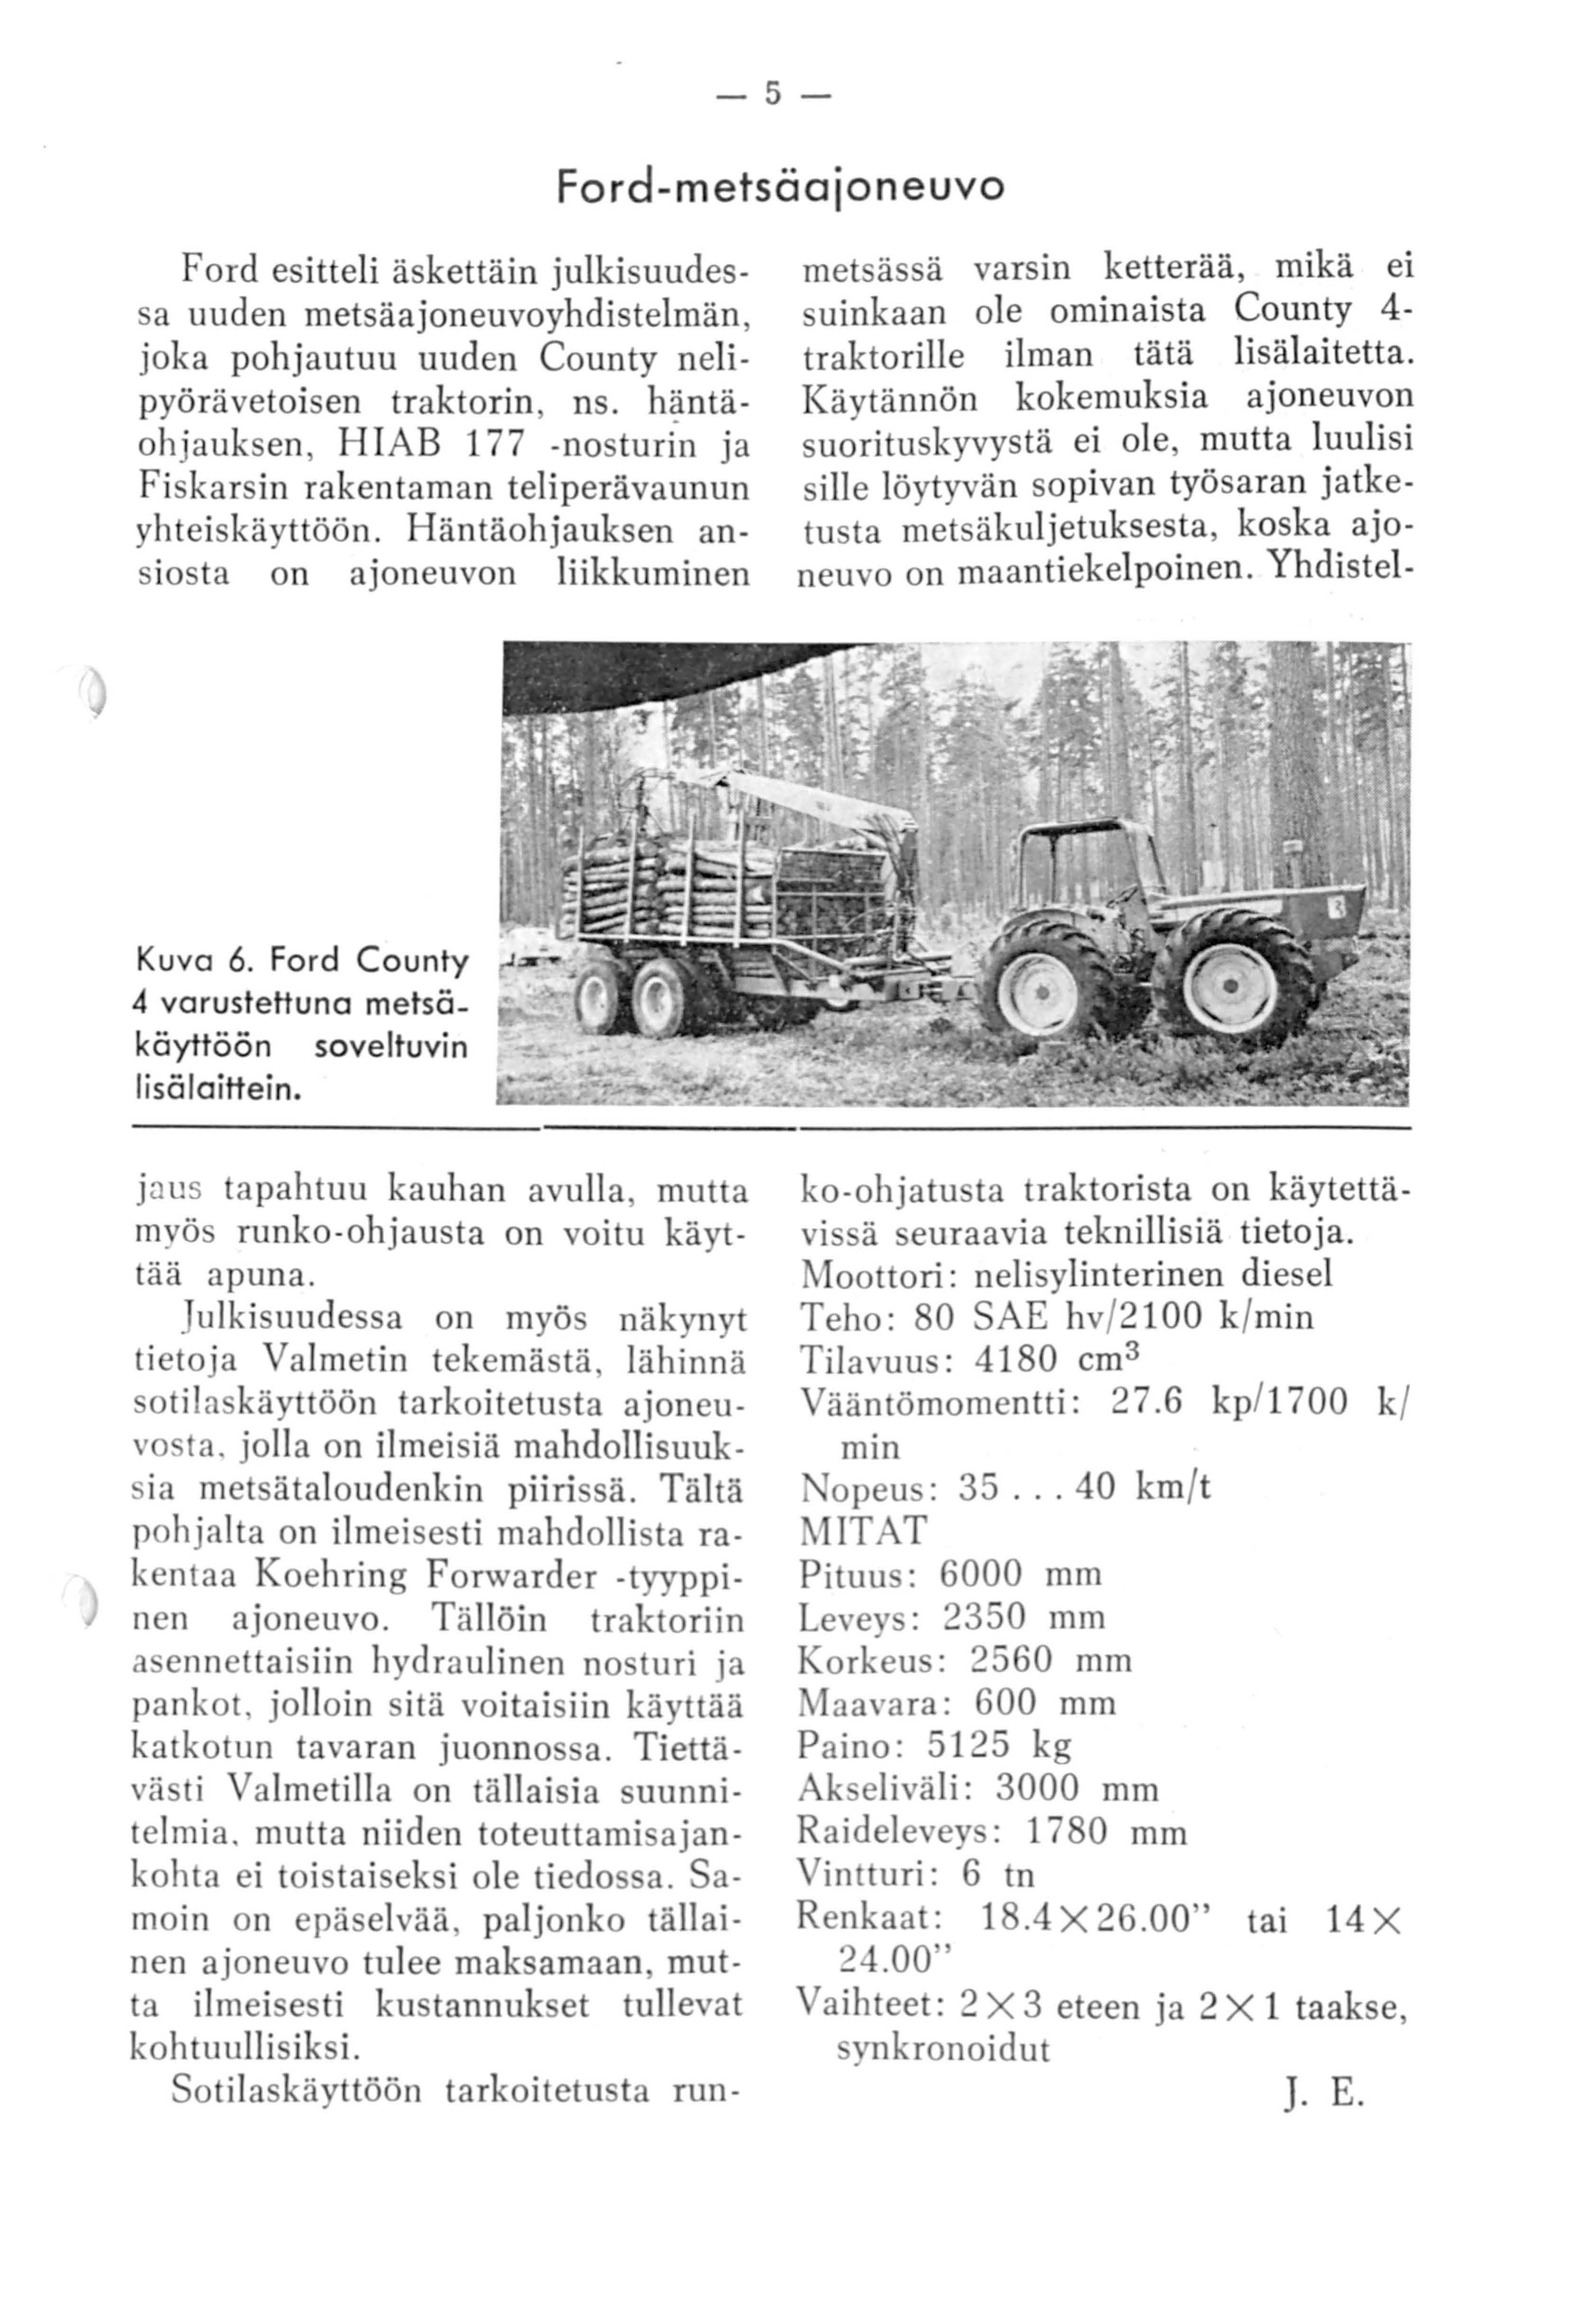 -5- Ford-metsäajoneuvo Ford esitteli äskettäin julkisuudessa uuden metsäajoneuvoyhdistelmän, joka pohjautuu uuden County nelipyörävetoisen traktorin, ns.